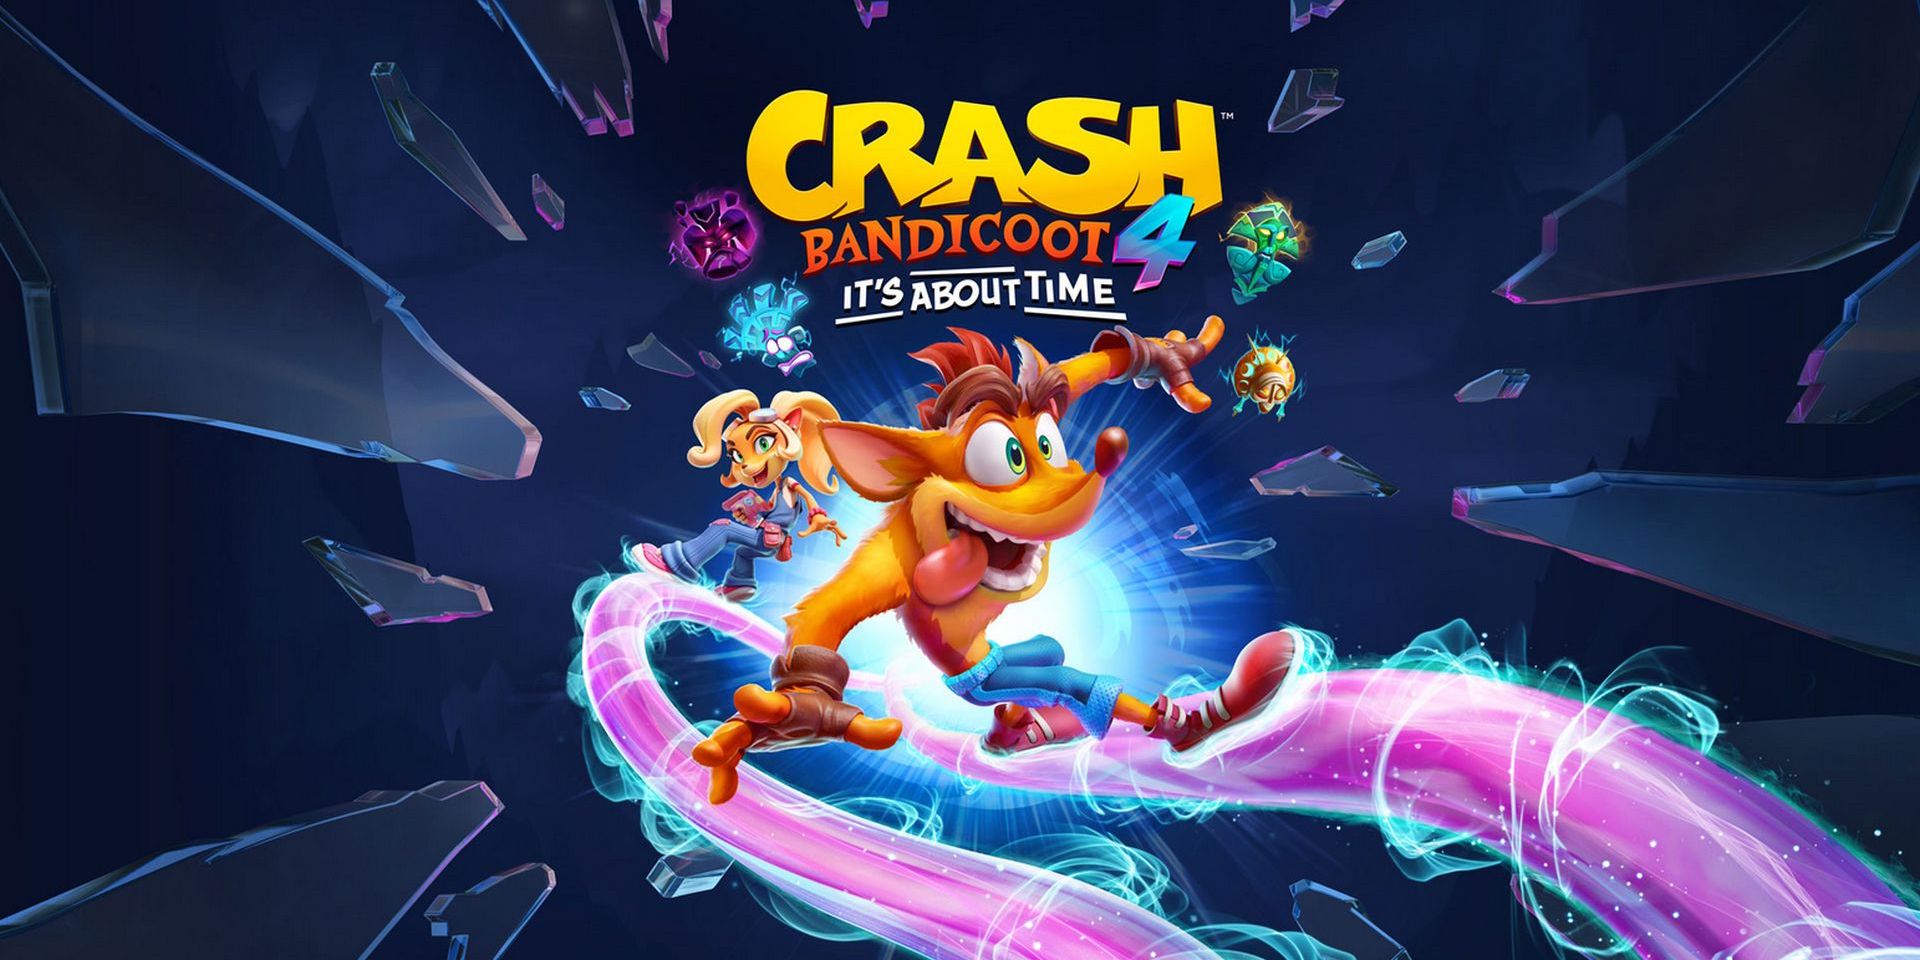 crash bandicoot 2 sgdq 2015